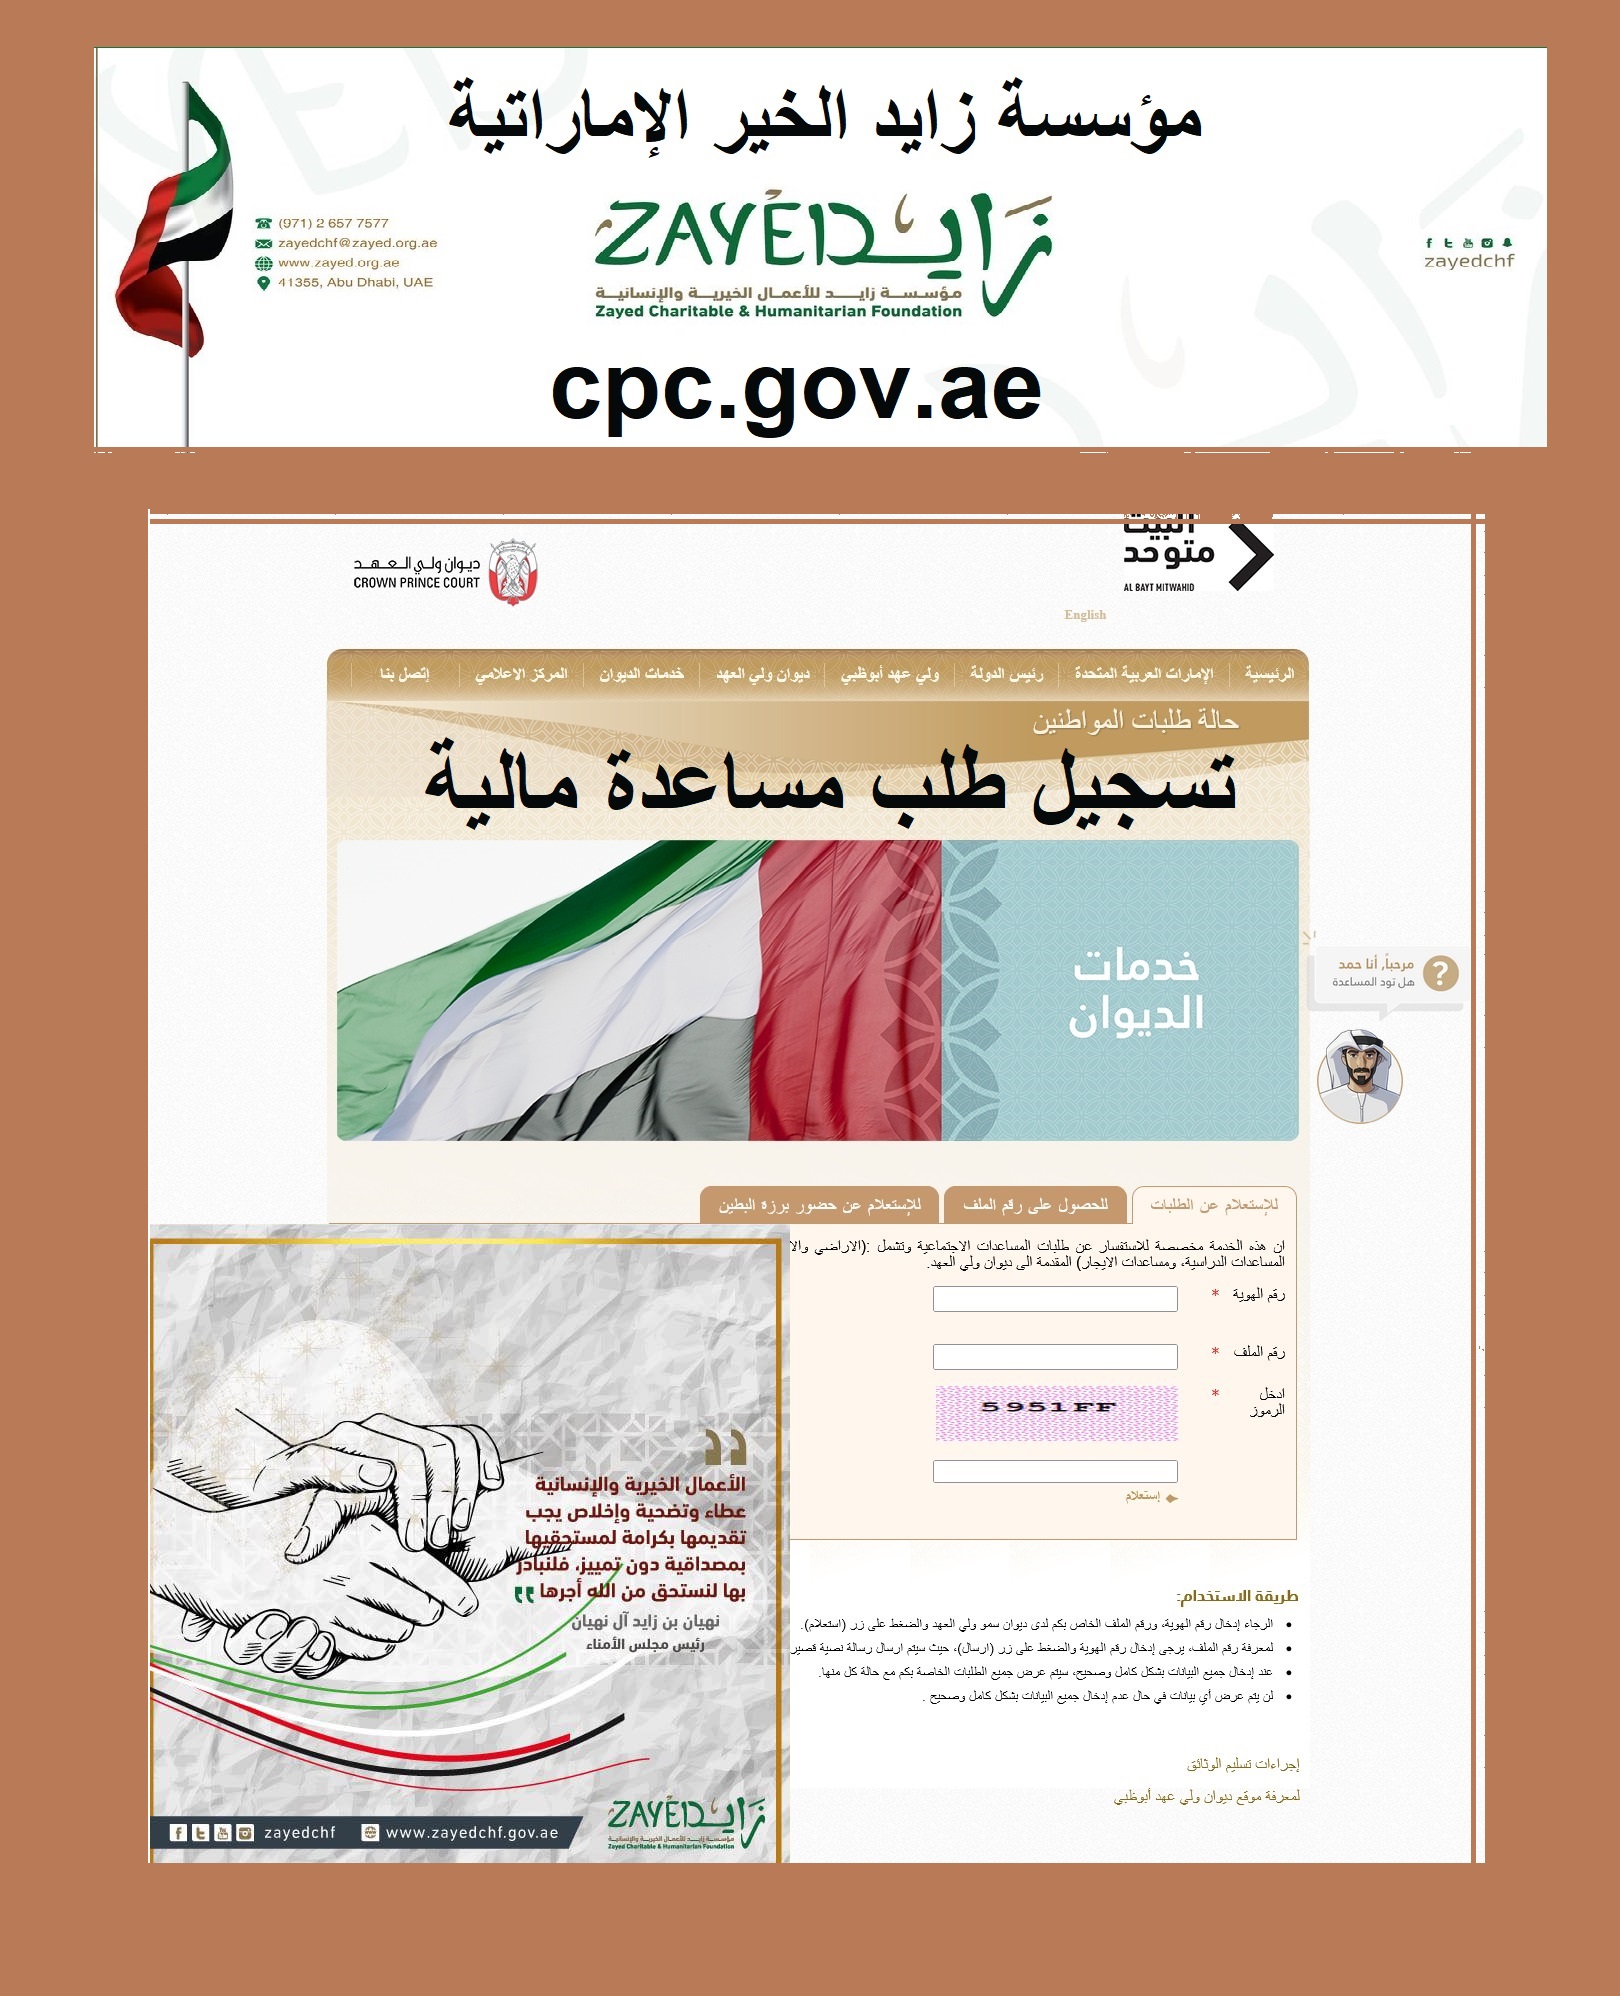 طريقة التسجيل للحصول على مساعدة مالية من مؤسسة زايد الخيرية zayedchf.gov.ae الإماراتية